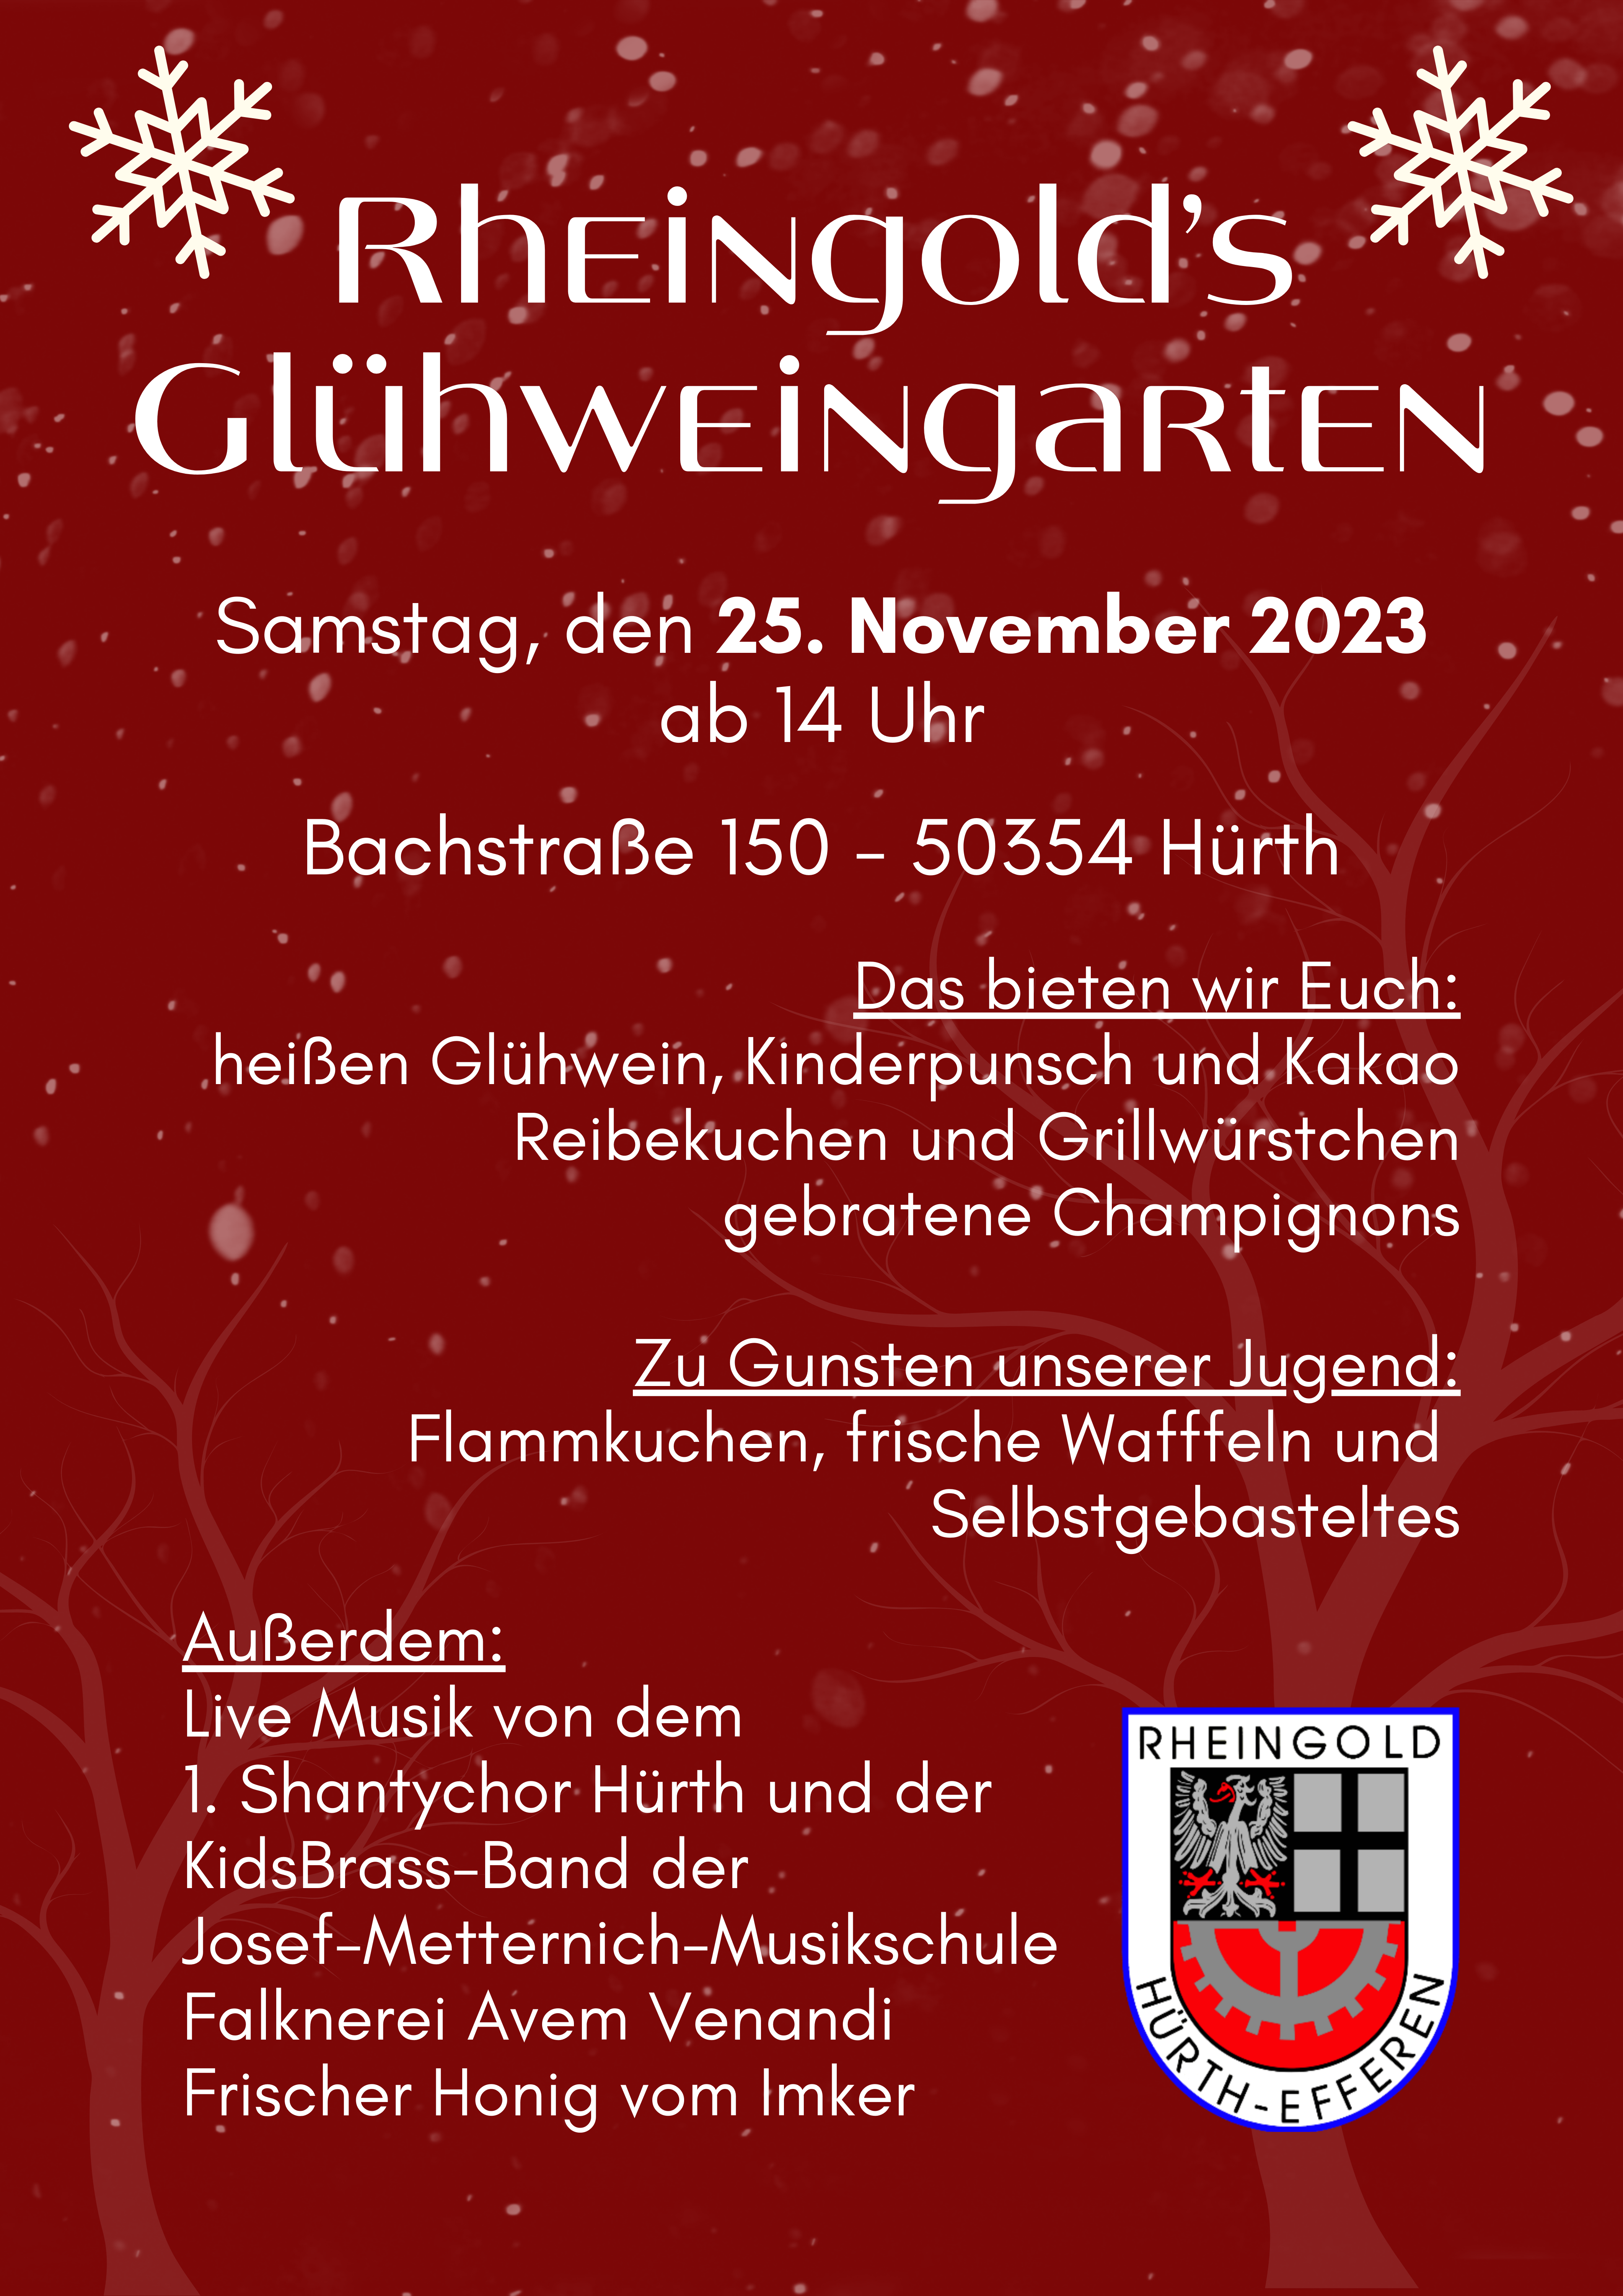 Rheingold's Glühweingarten 2023